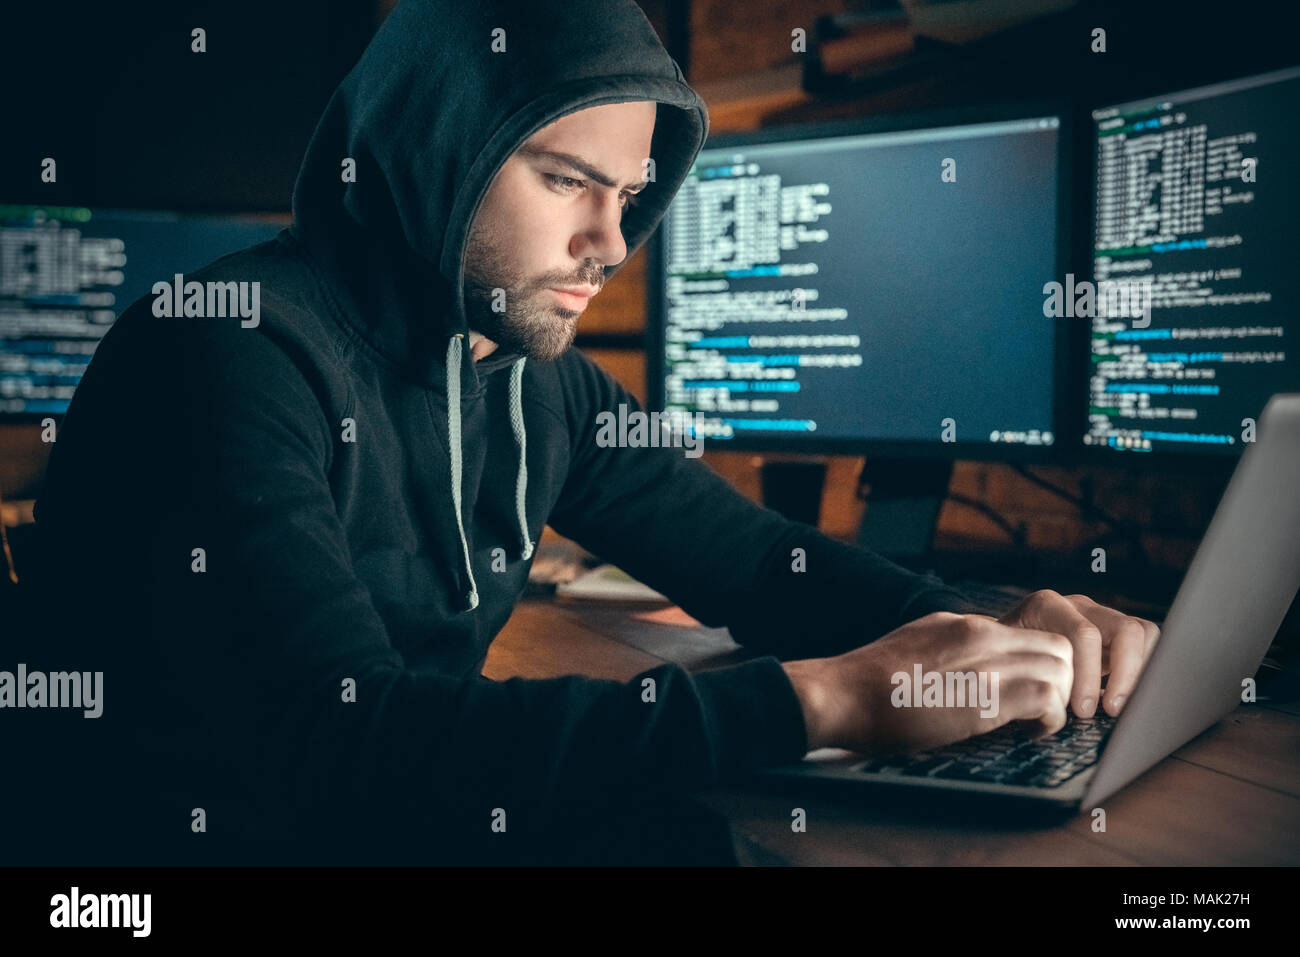 Junger Mann finanzielle Hacker im Büro am Tisch sitzend Arbeiten am Laptop zu hack System konzentriert Stockfoto